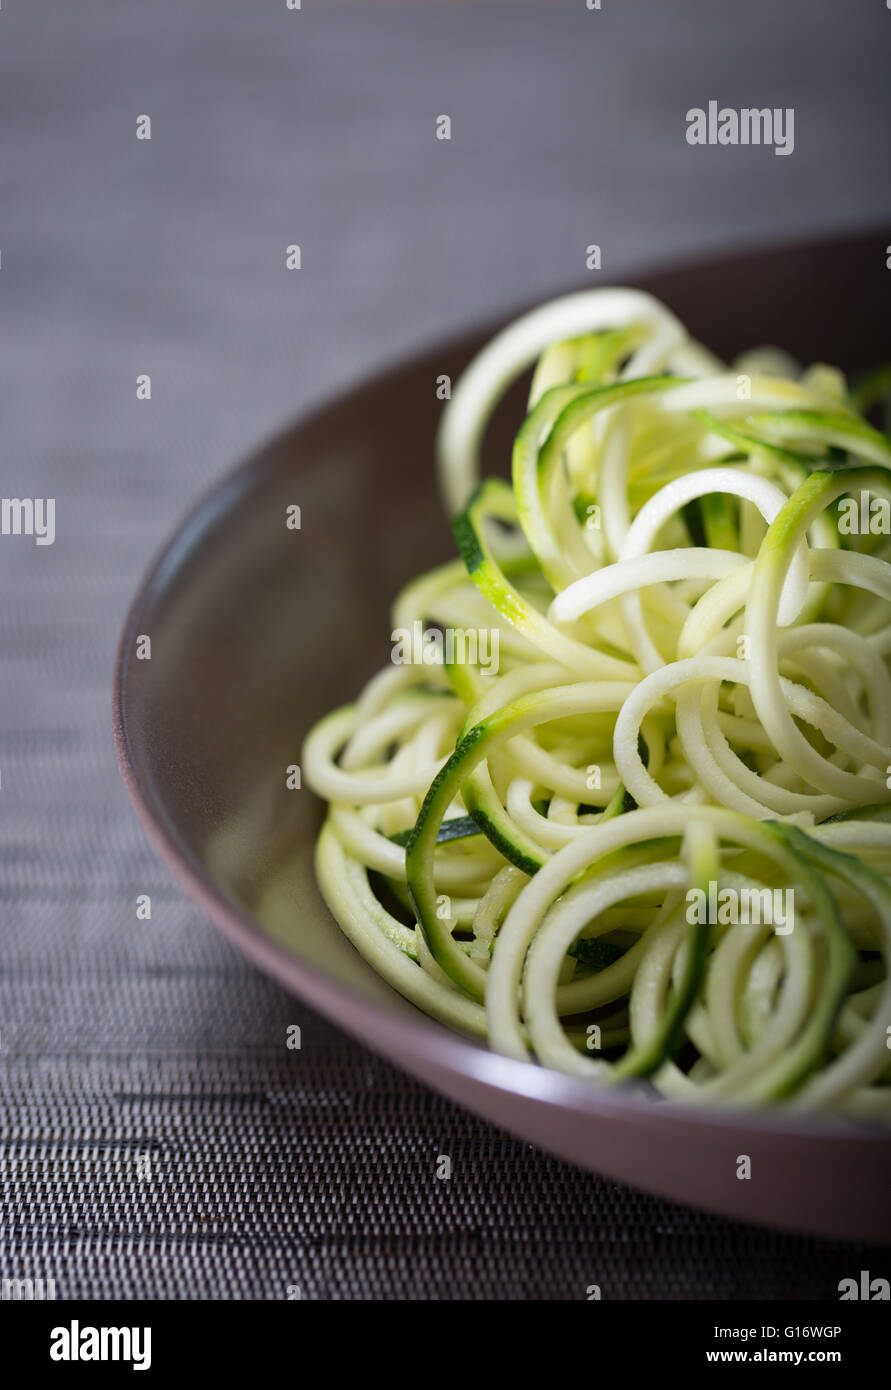 Un tazón de calabacín (zucchini) fideos (espaguetis) realizados mediante un spiralizer Foto de stock